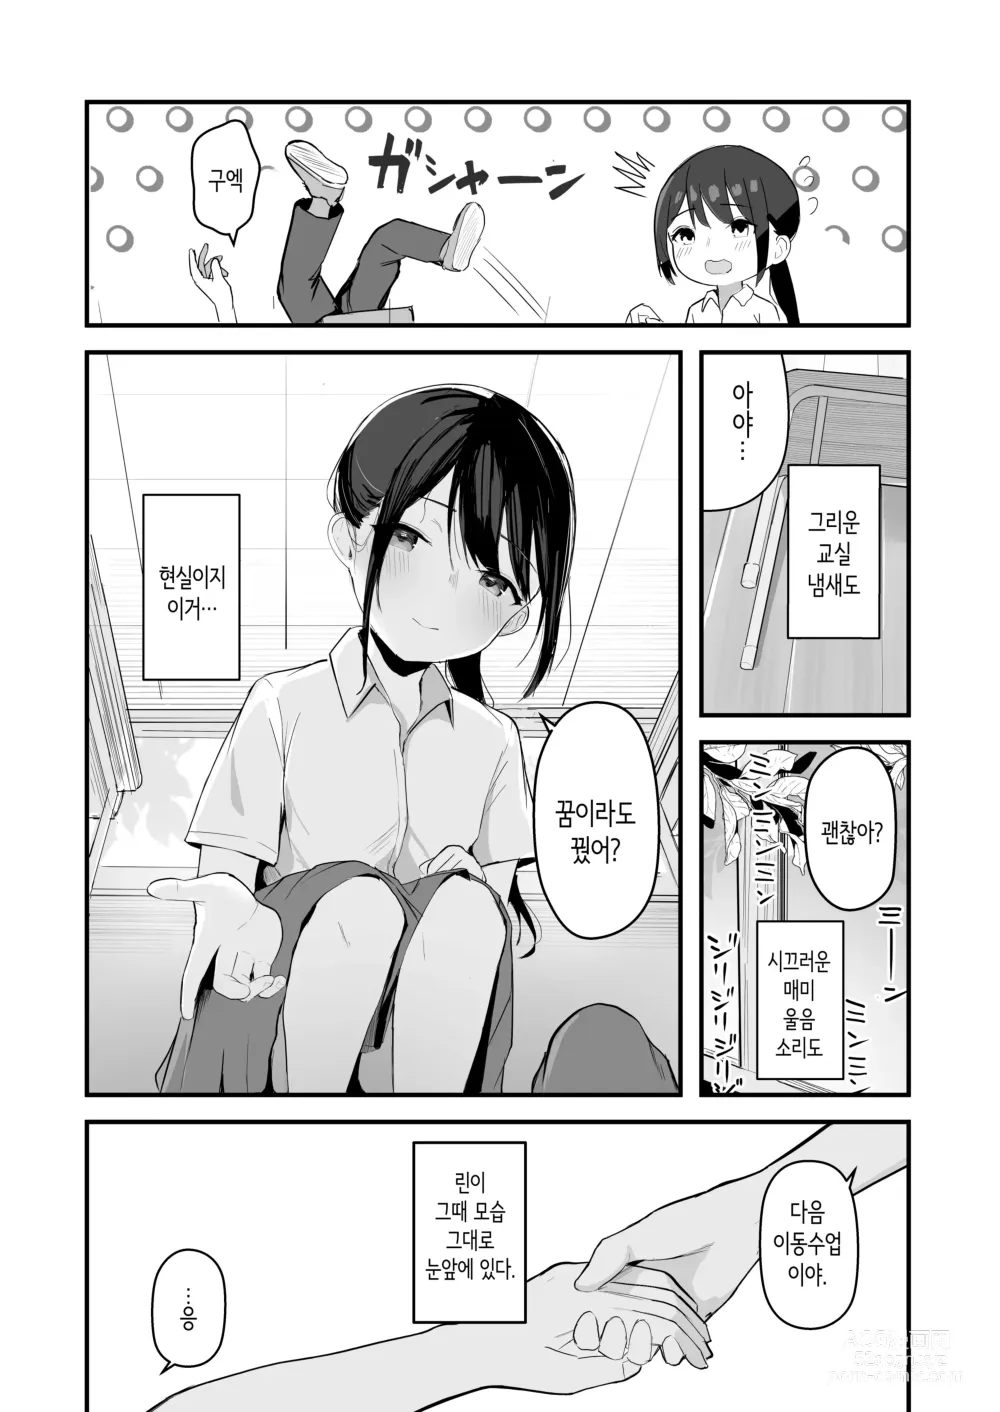 Page 7 of doujinshi 청춘을 재시작할 수 있다면 이번에야말로 좋아했던 동급생과 사귀어서 반드시 미친듯이 섹스하고 싶다.